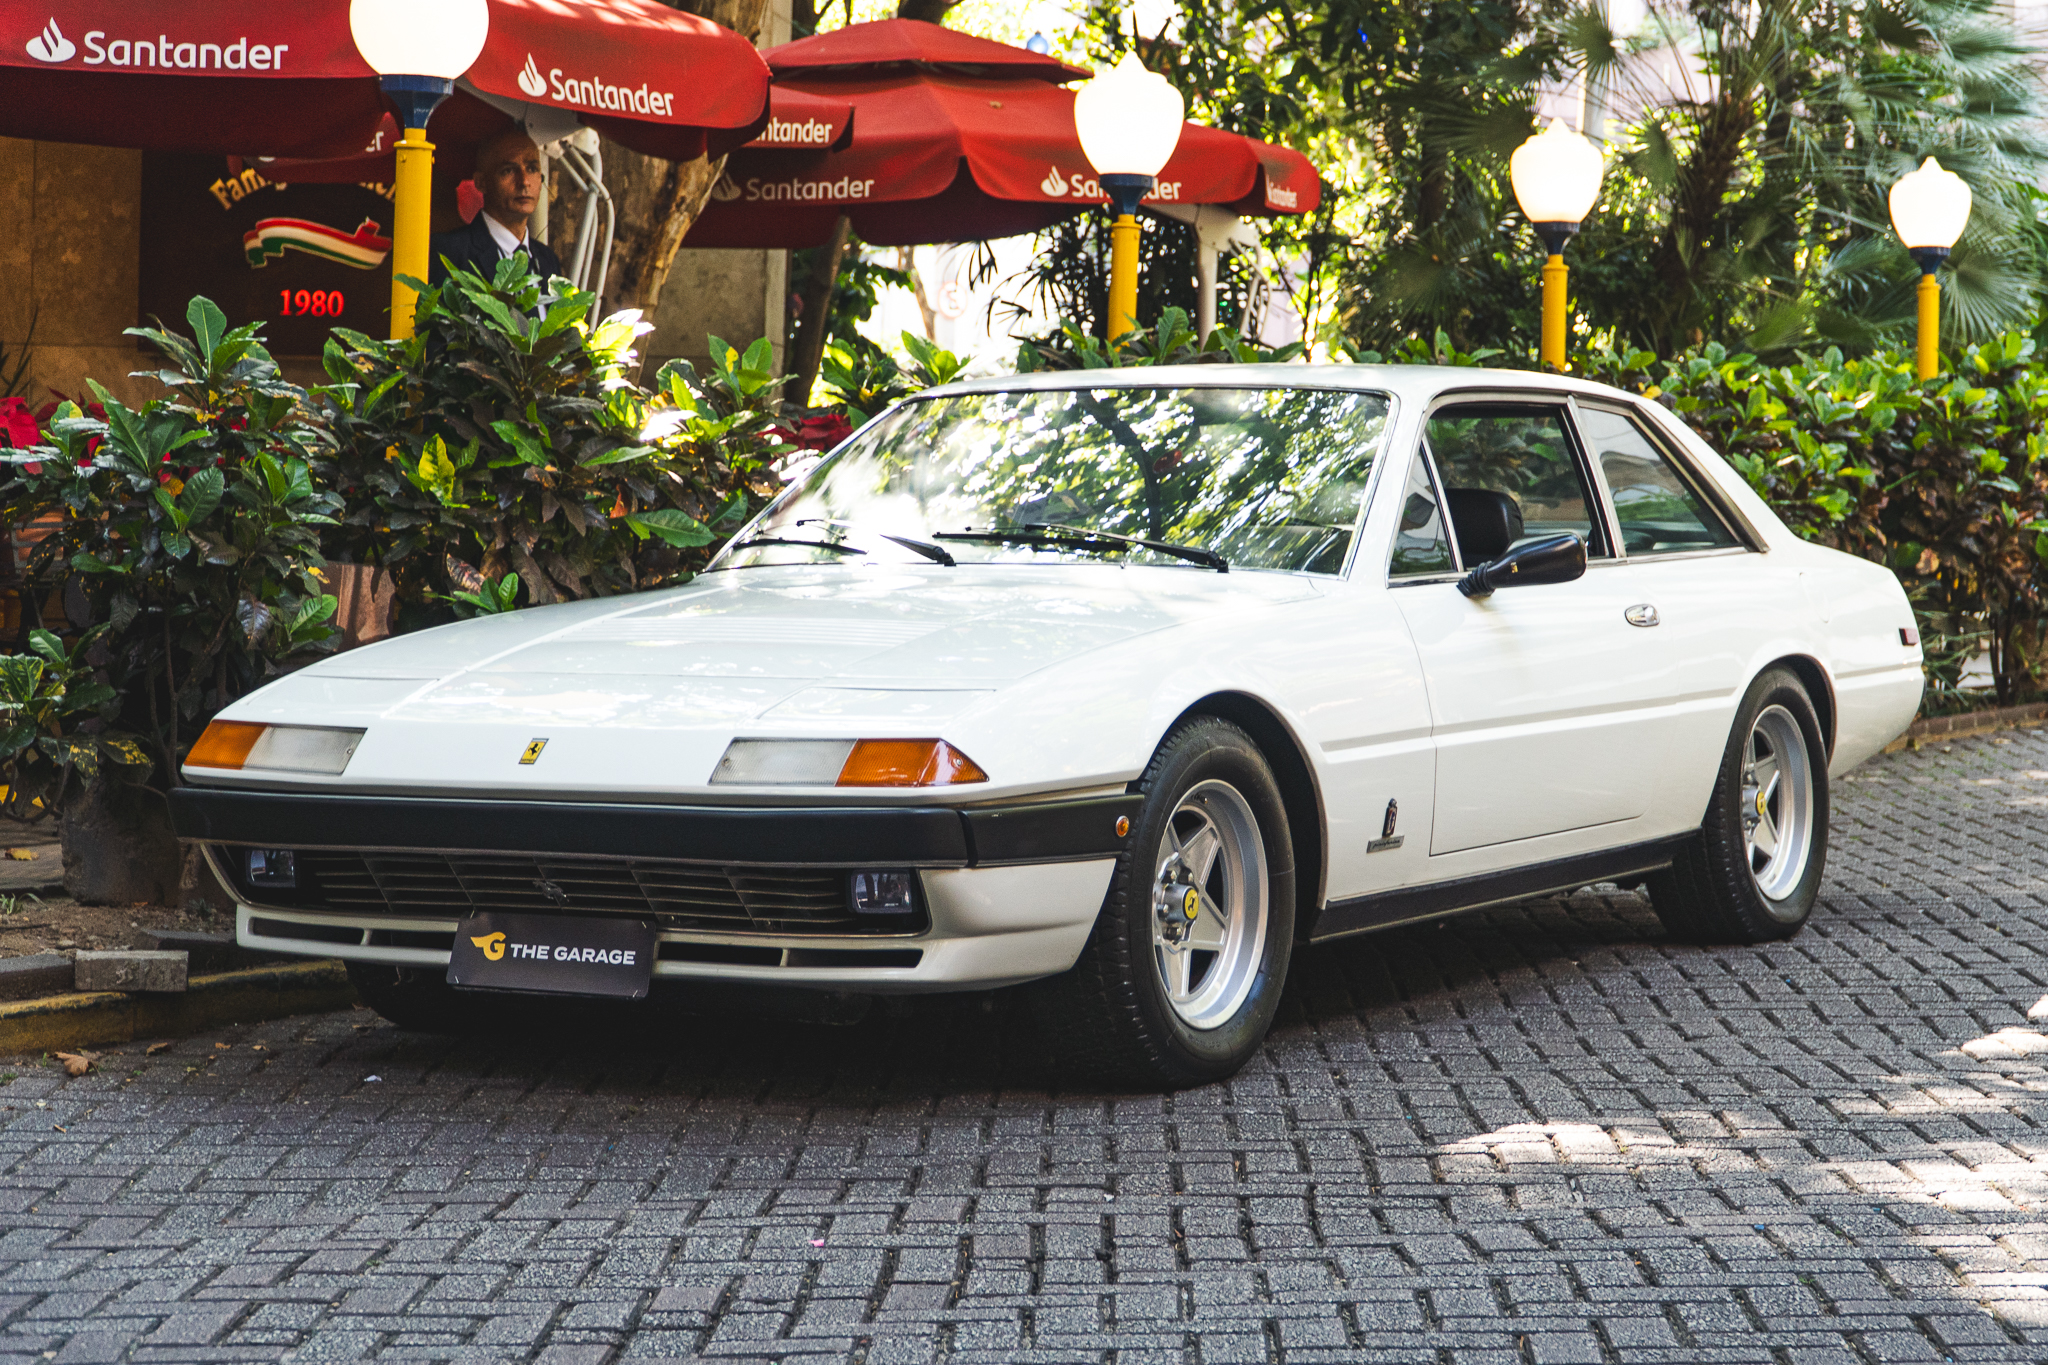 1984 Ferrari 400i GT Coupe a venda for sale the garage